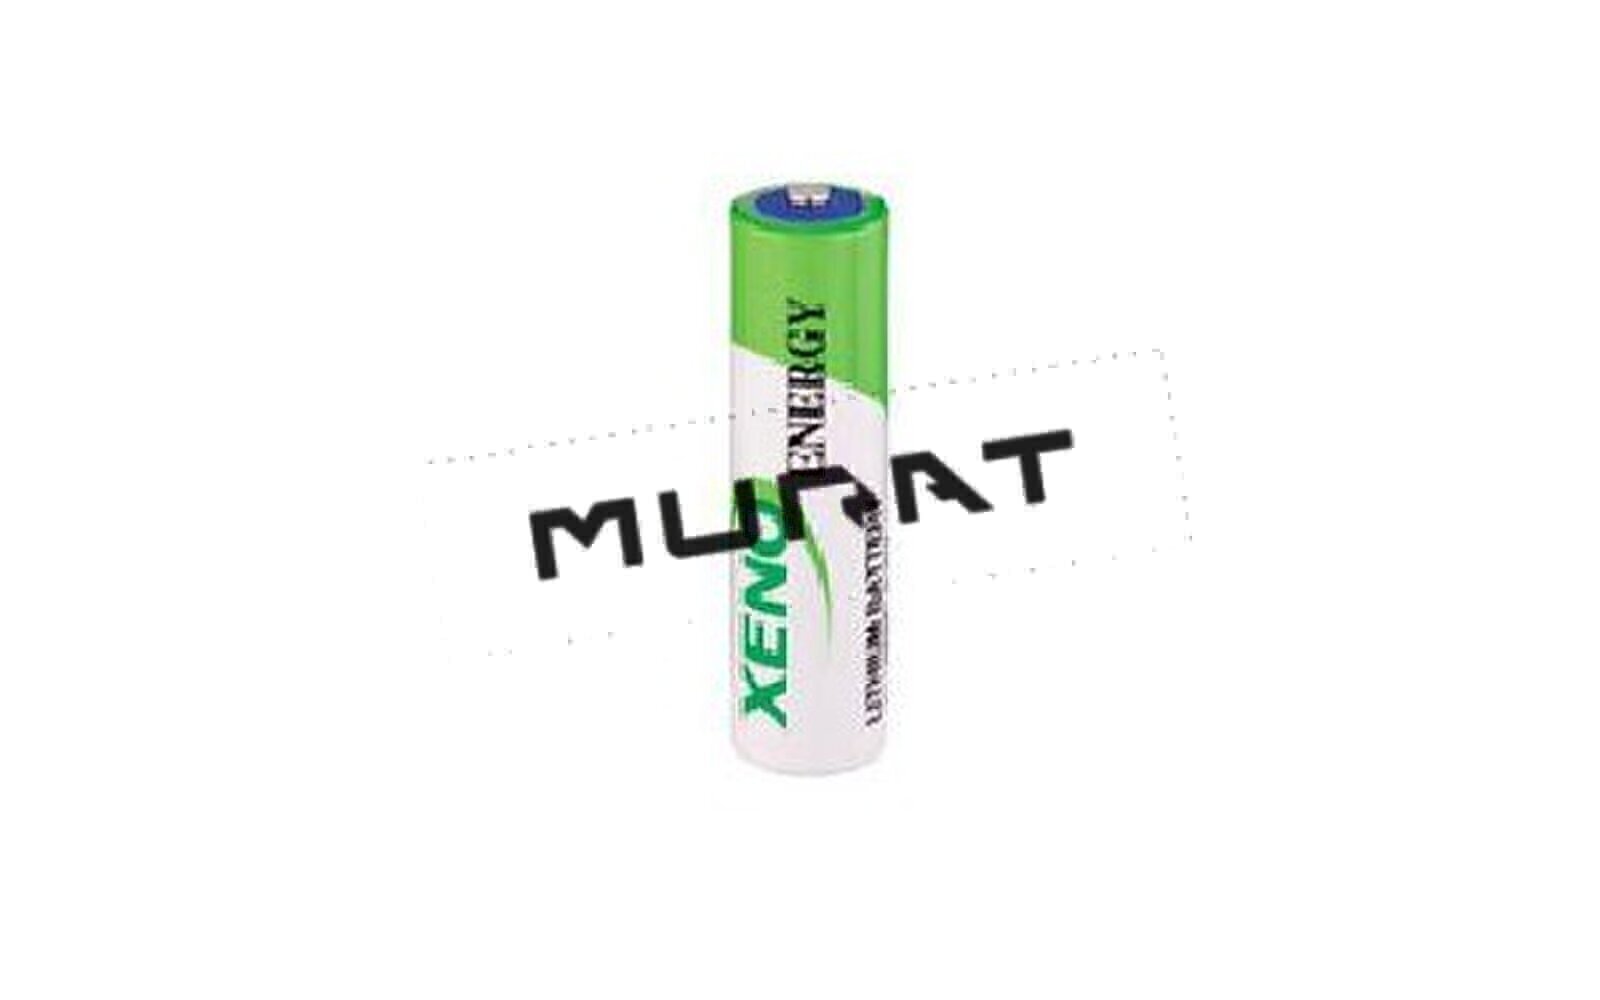 XL-060F (LS14500), XENO Lithium Battery Li-SOCL2 3,6V 2,4Ah AA